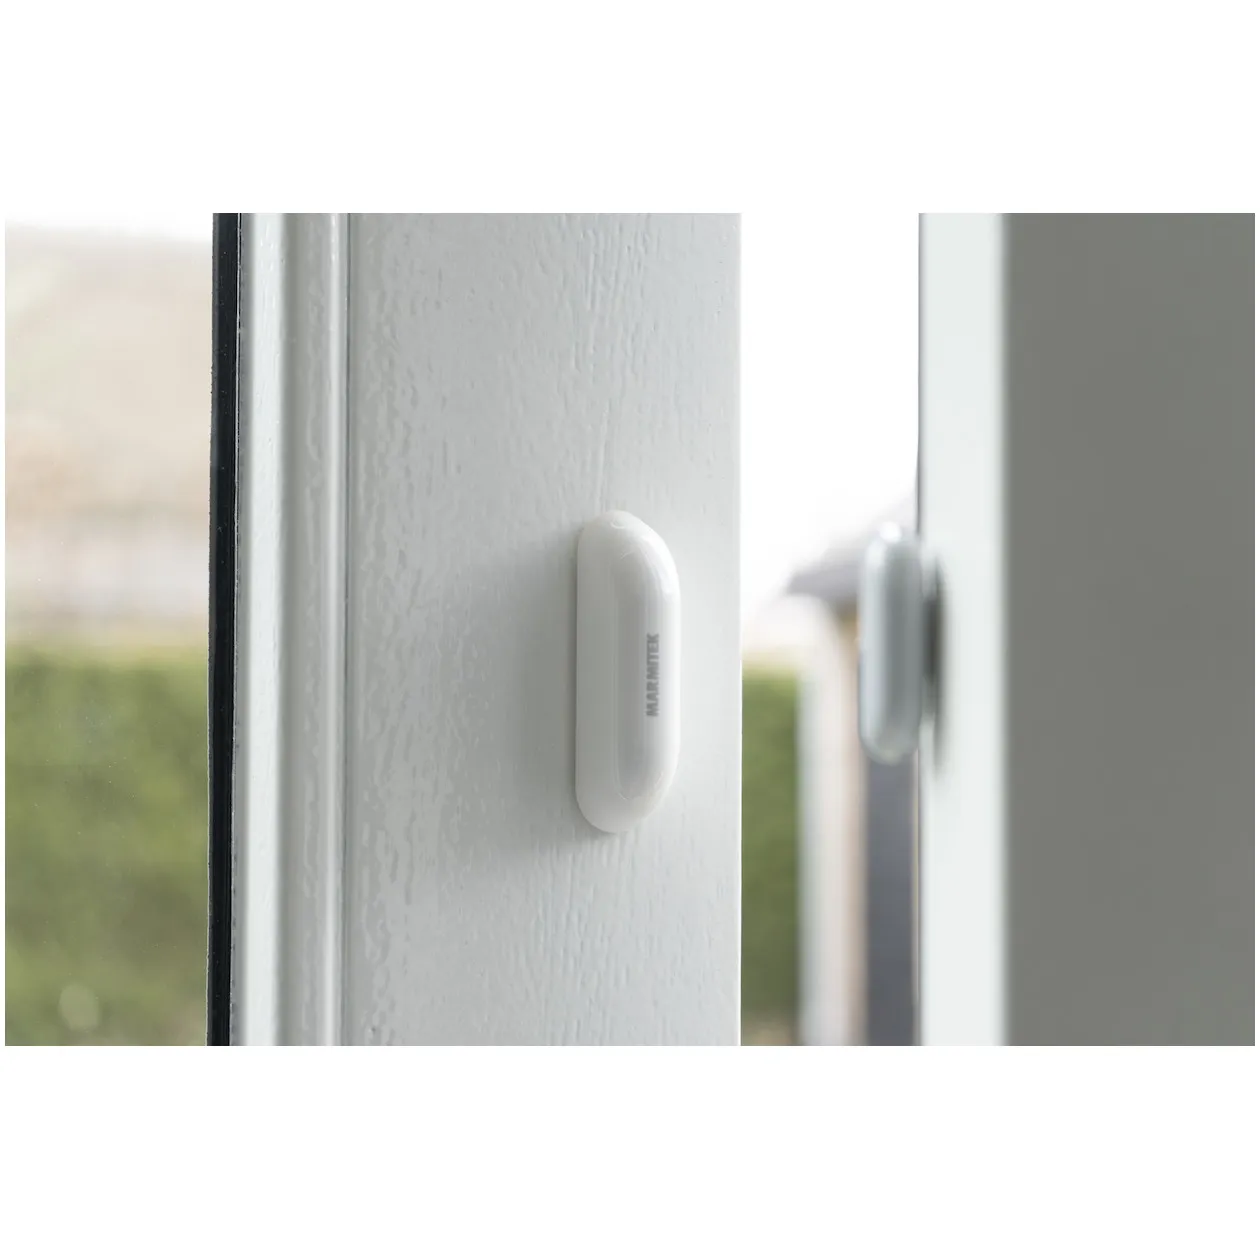 Marmitek SENSE SI - Smart Wi-Fi sensor - Door/window | scene activation | battery Grijs